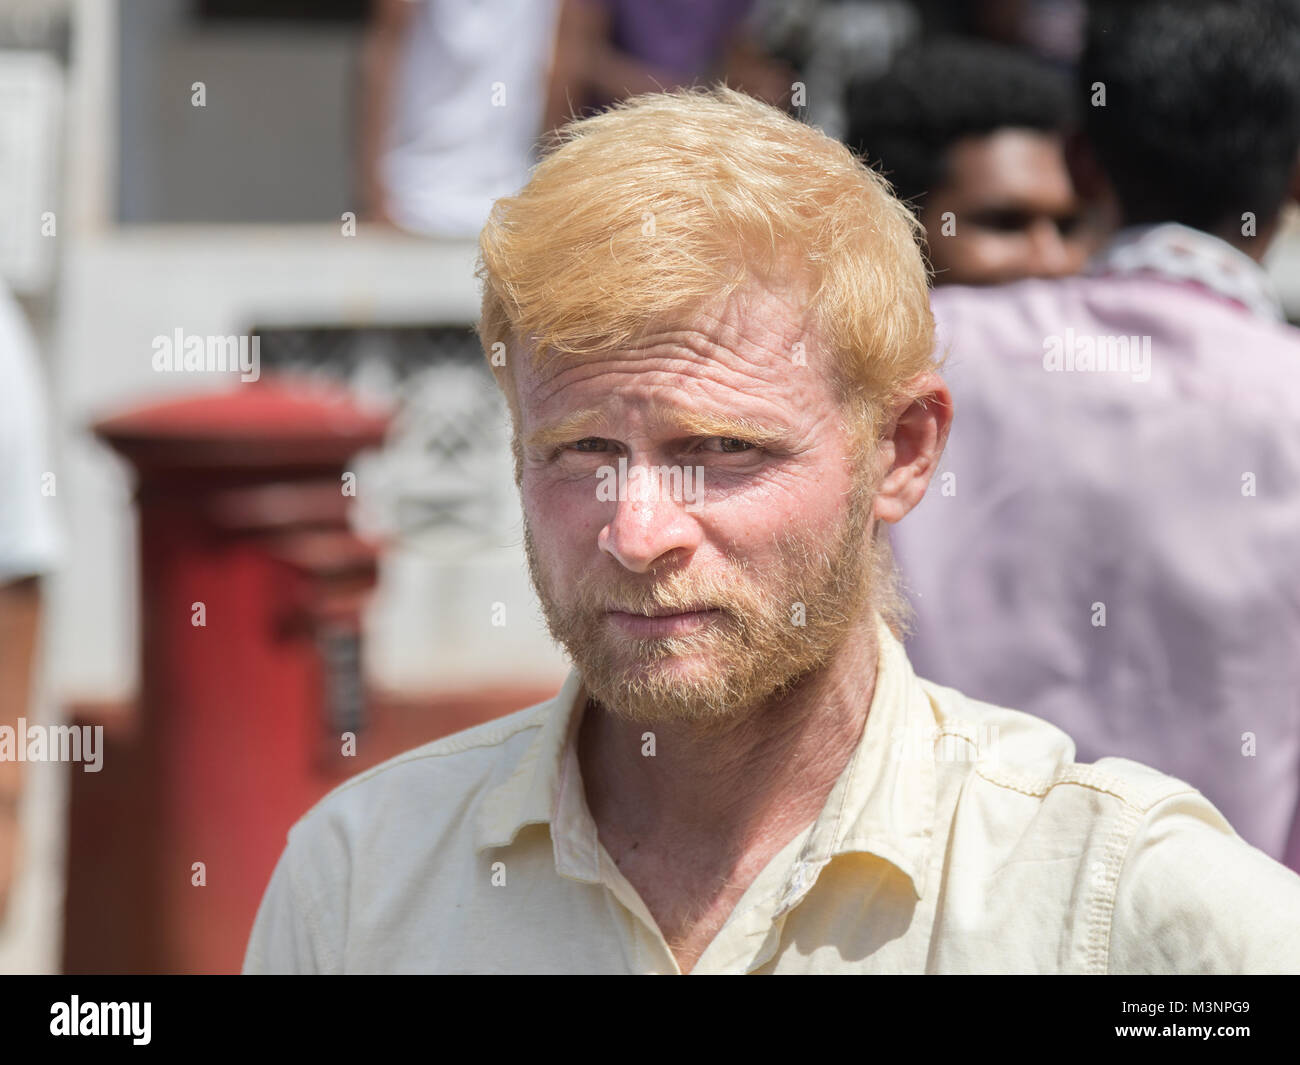 [Image: albino-man-indian-hindu-blonde-white-par...M3NPG9.jpg]